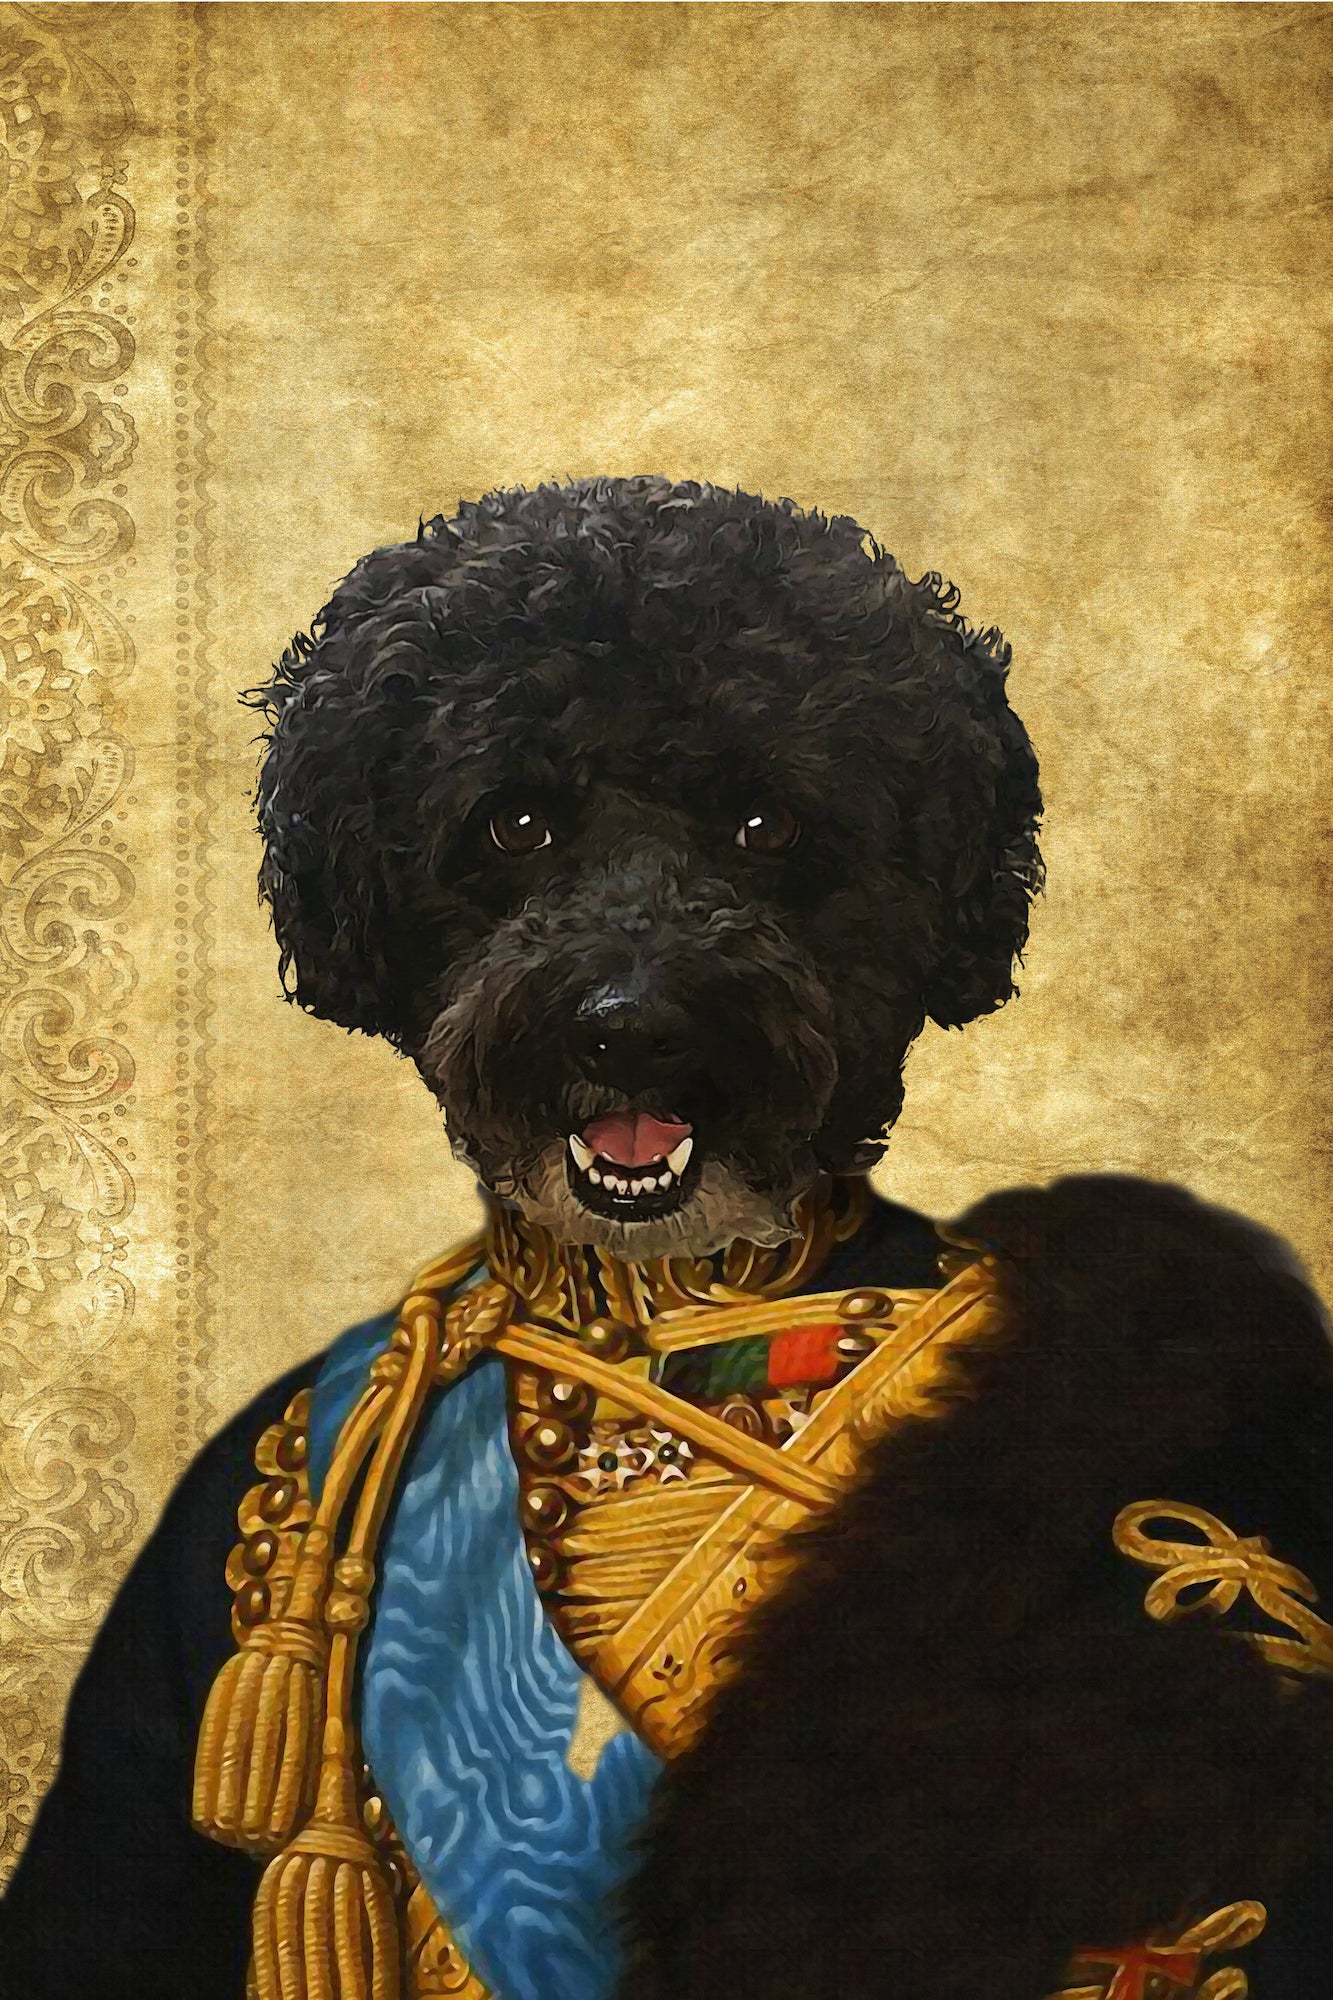 The Colonel En Second General Custom Pet Portrait Canvas - Noble Pawtrait